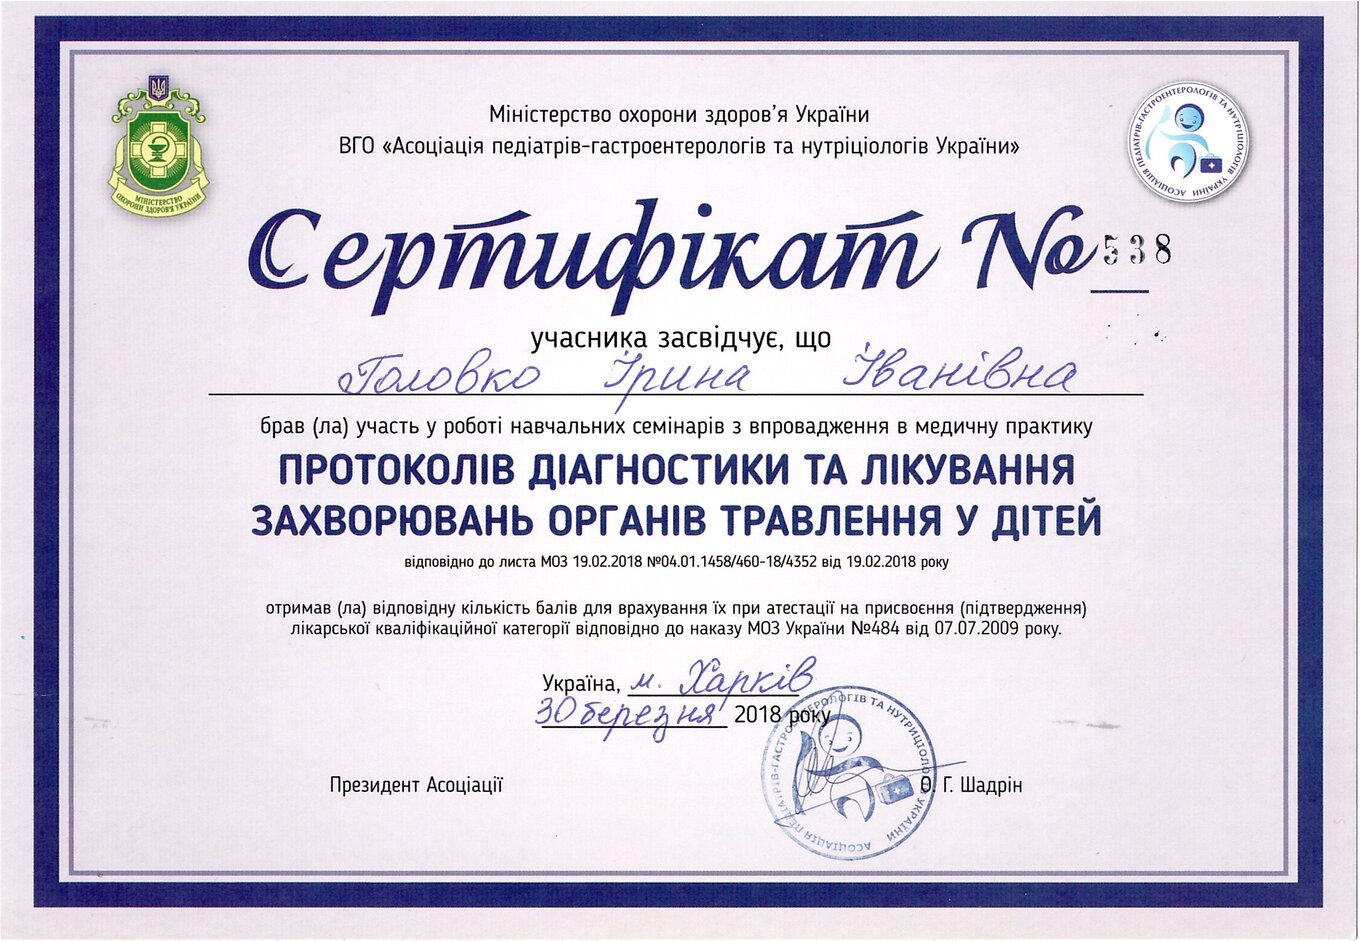 Golovko Irina Ivanivna sertifikat12